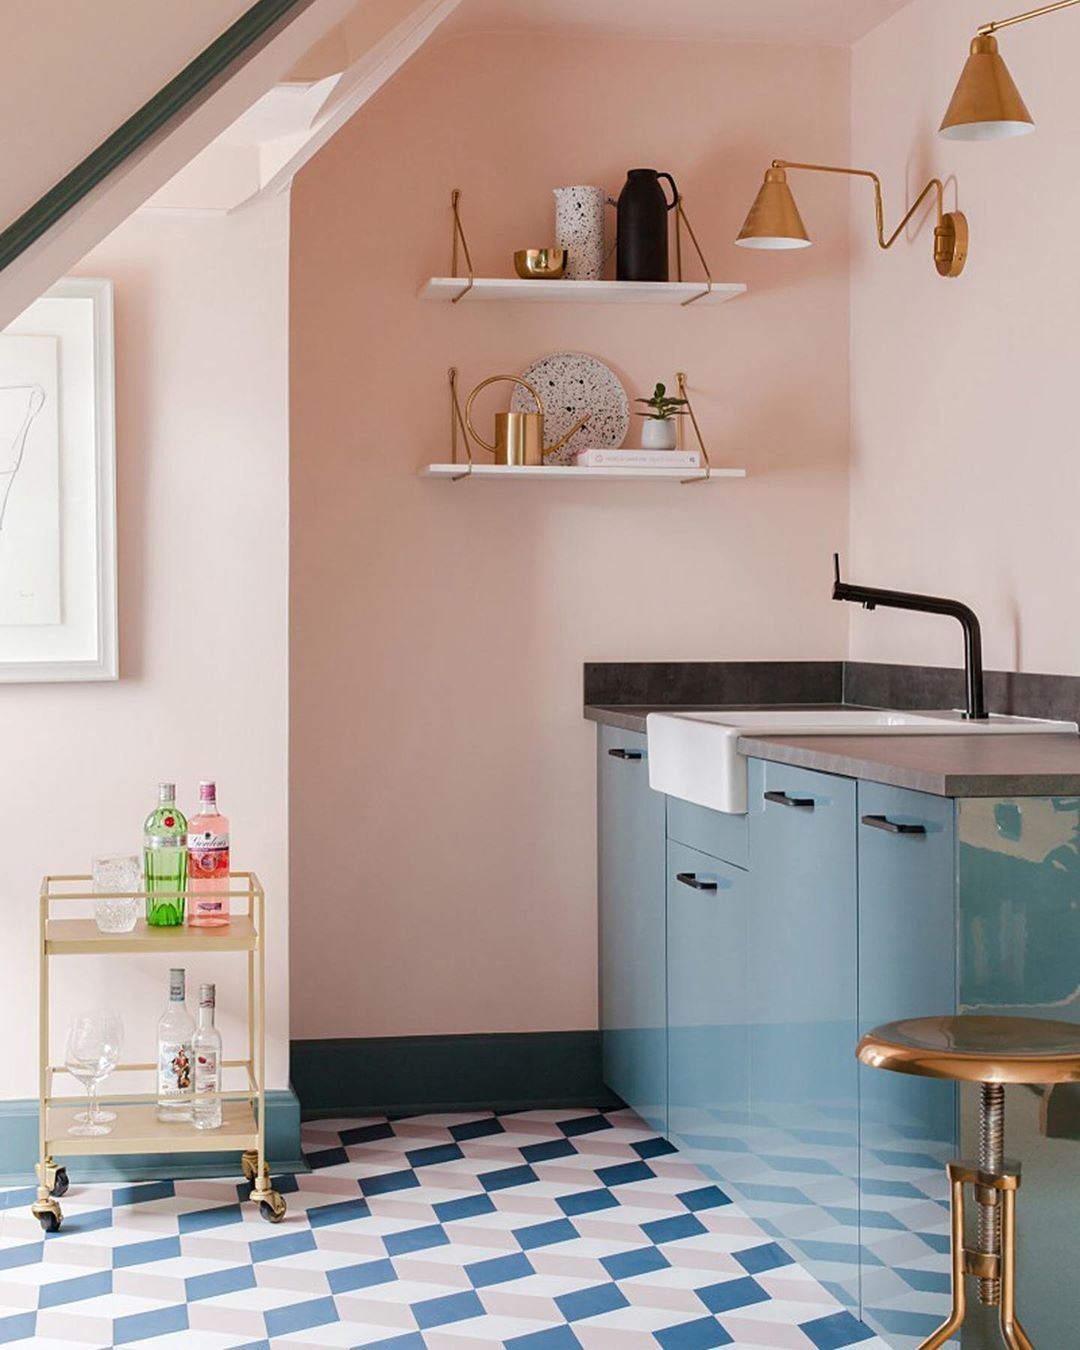 Cozinha compacta: ideias de decoração para espaços pequenos (Foto: Divulgação)